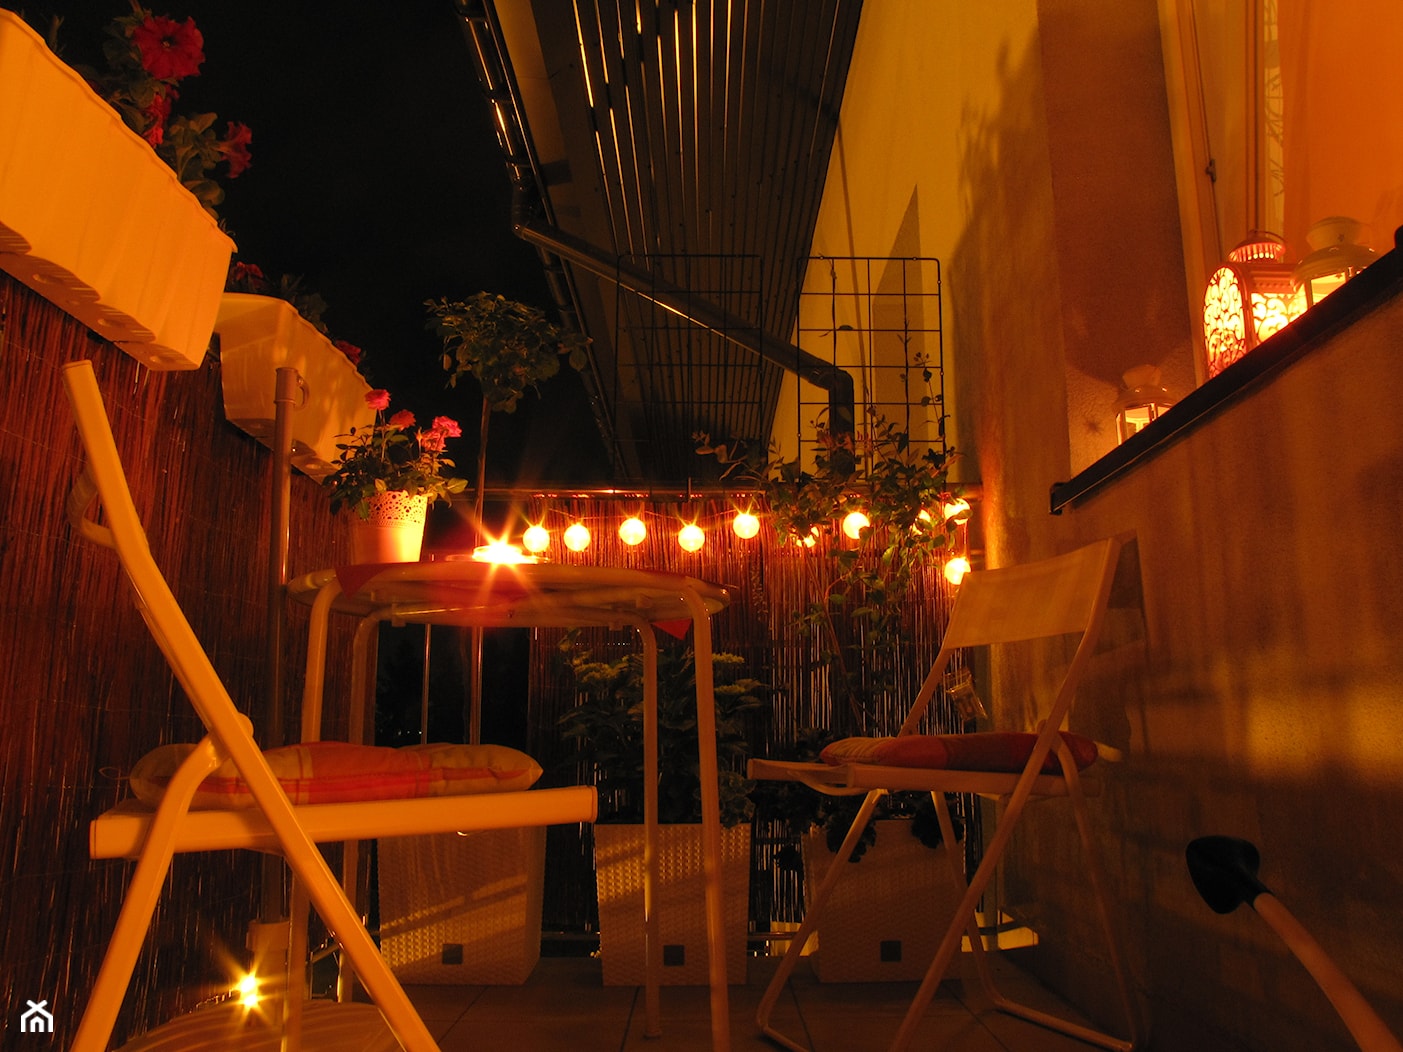 Cukierkowy pokój "pod chmurką" na romatyczne wieczory we dwoje - Taras, styl nowoczesny - zdjęcie od Teresa Olejarnik - Homebook